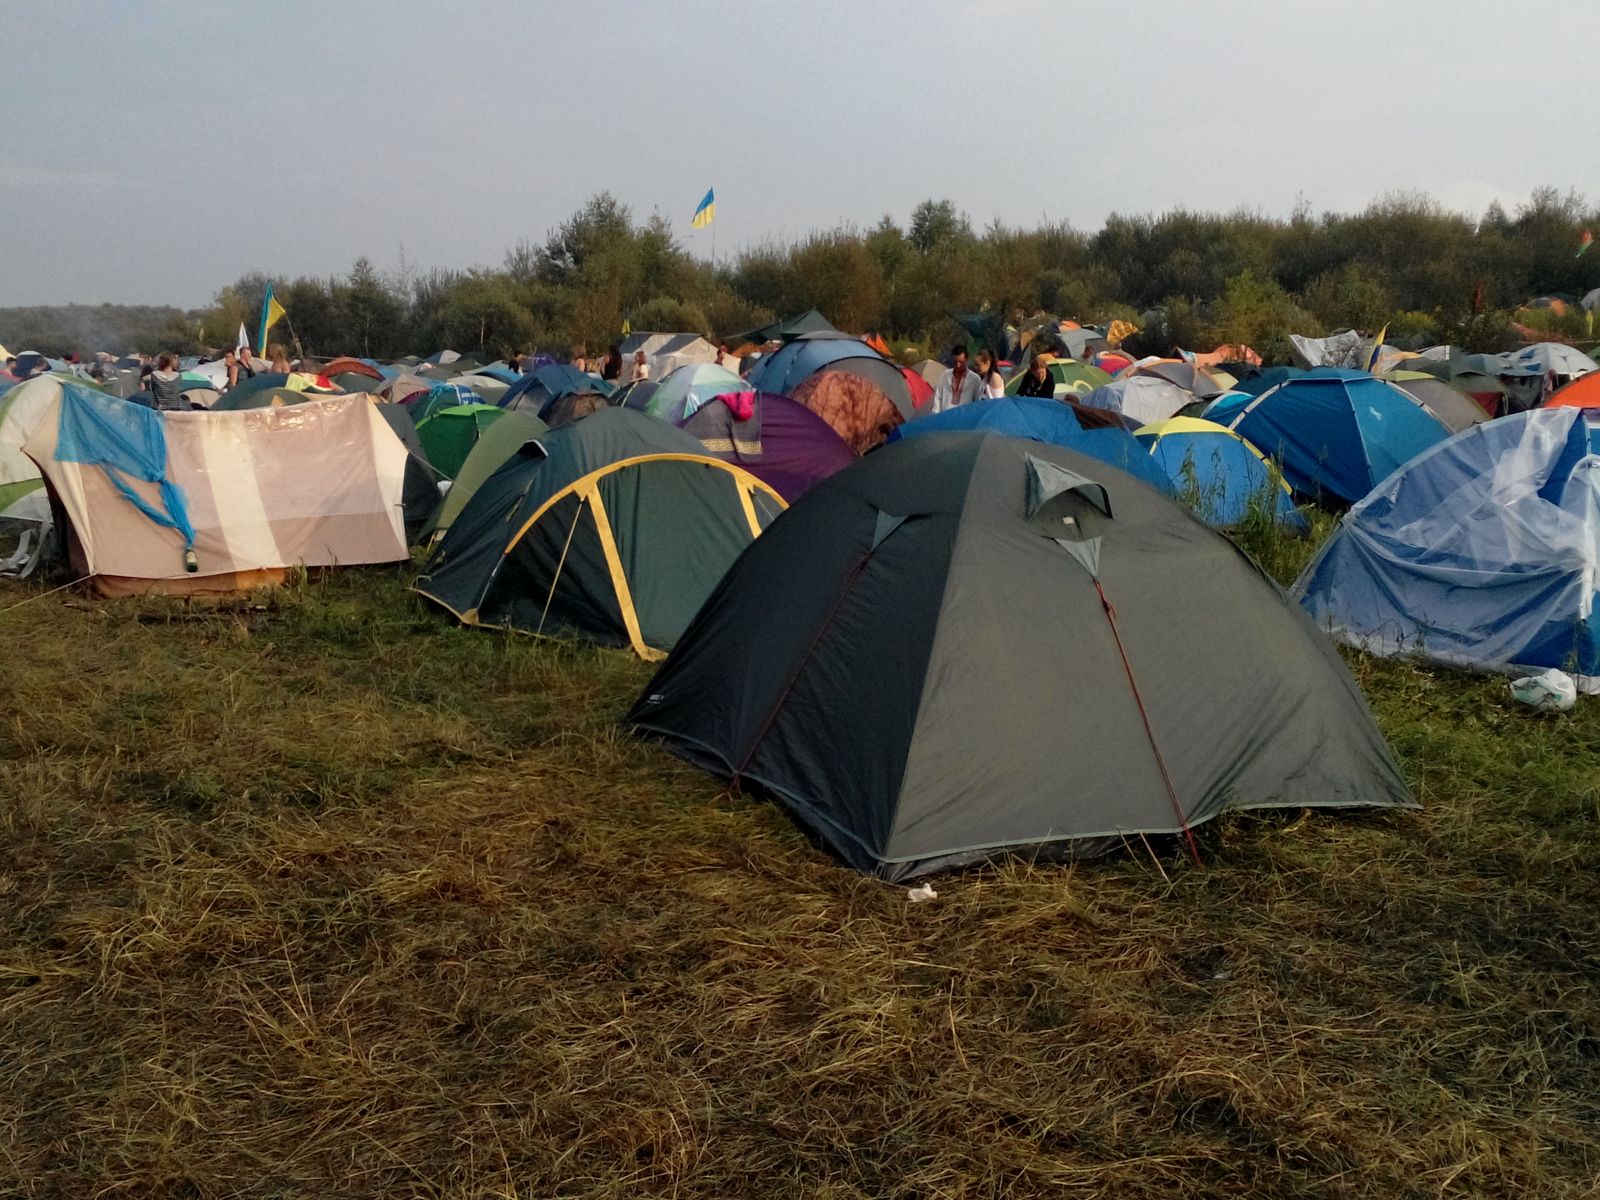 Бесплатный палаточный городок. Народу приехало очень много, 15-20 тысяч. Палатки здесь, на фото, слева, справа, вон там в посадке, сзади...